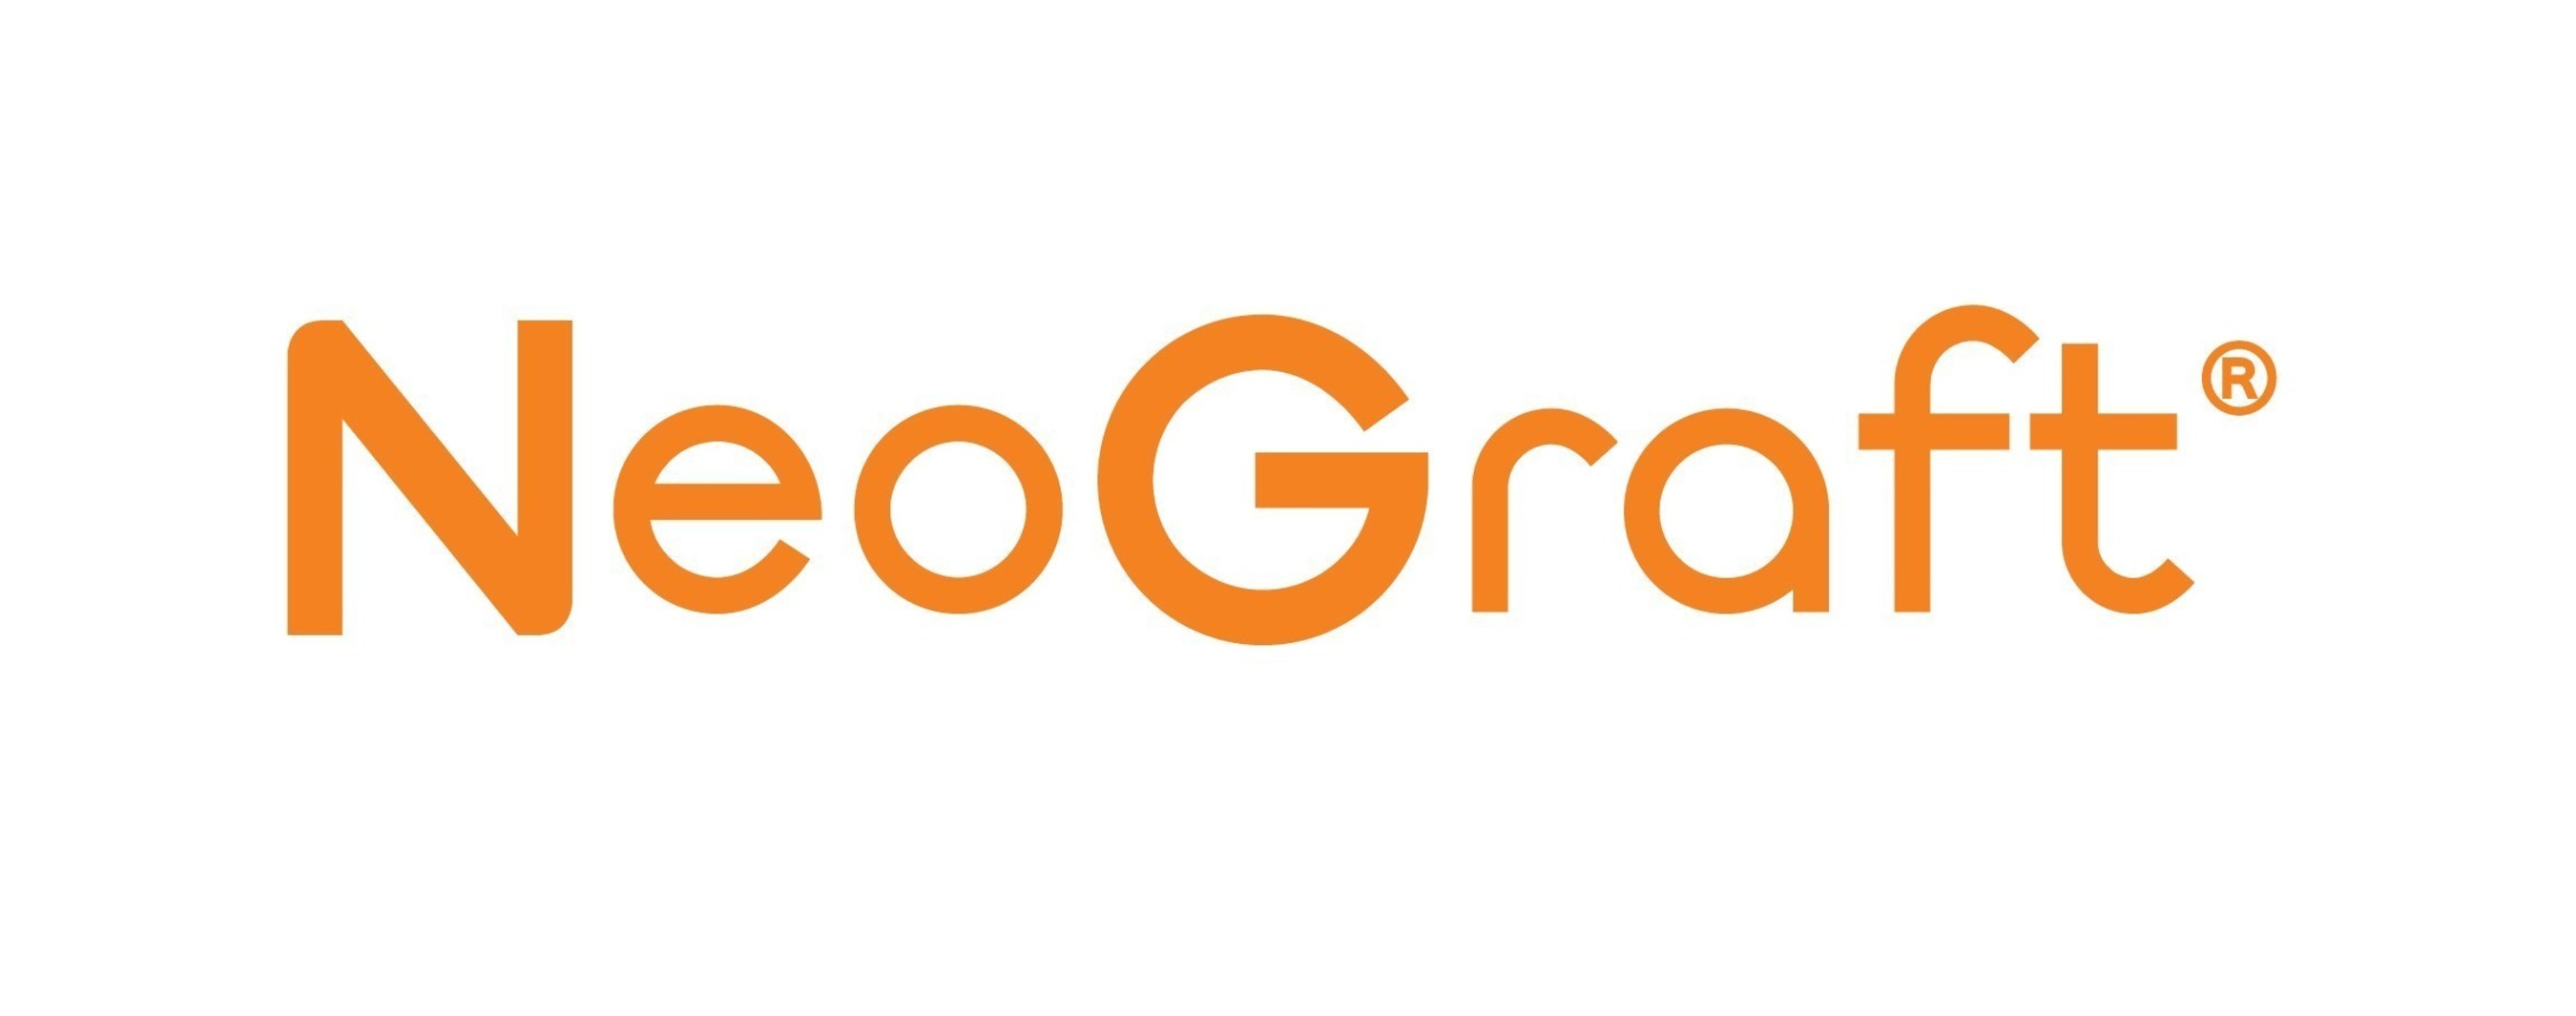 NeoGraft's new logo